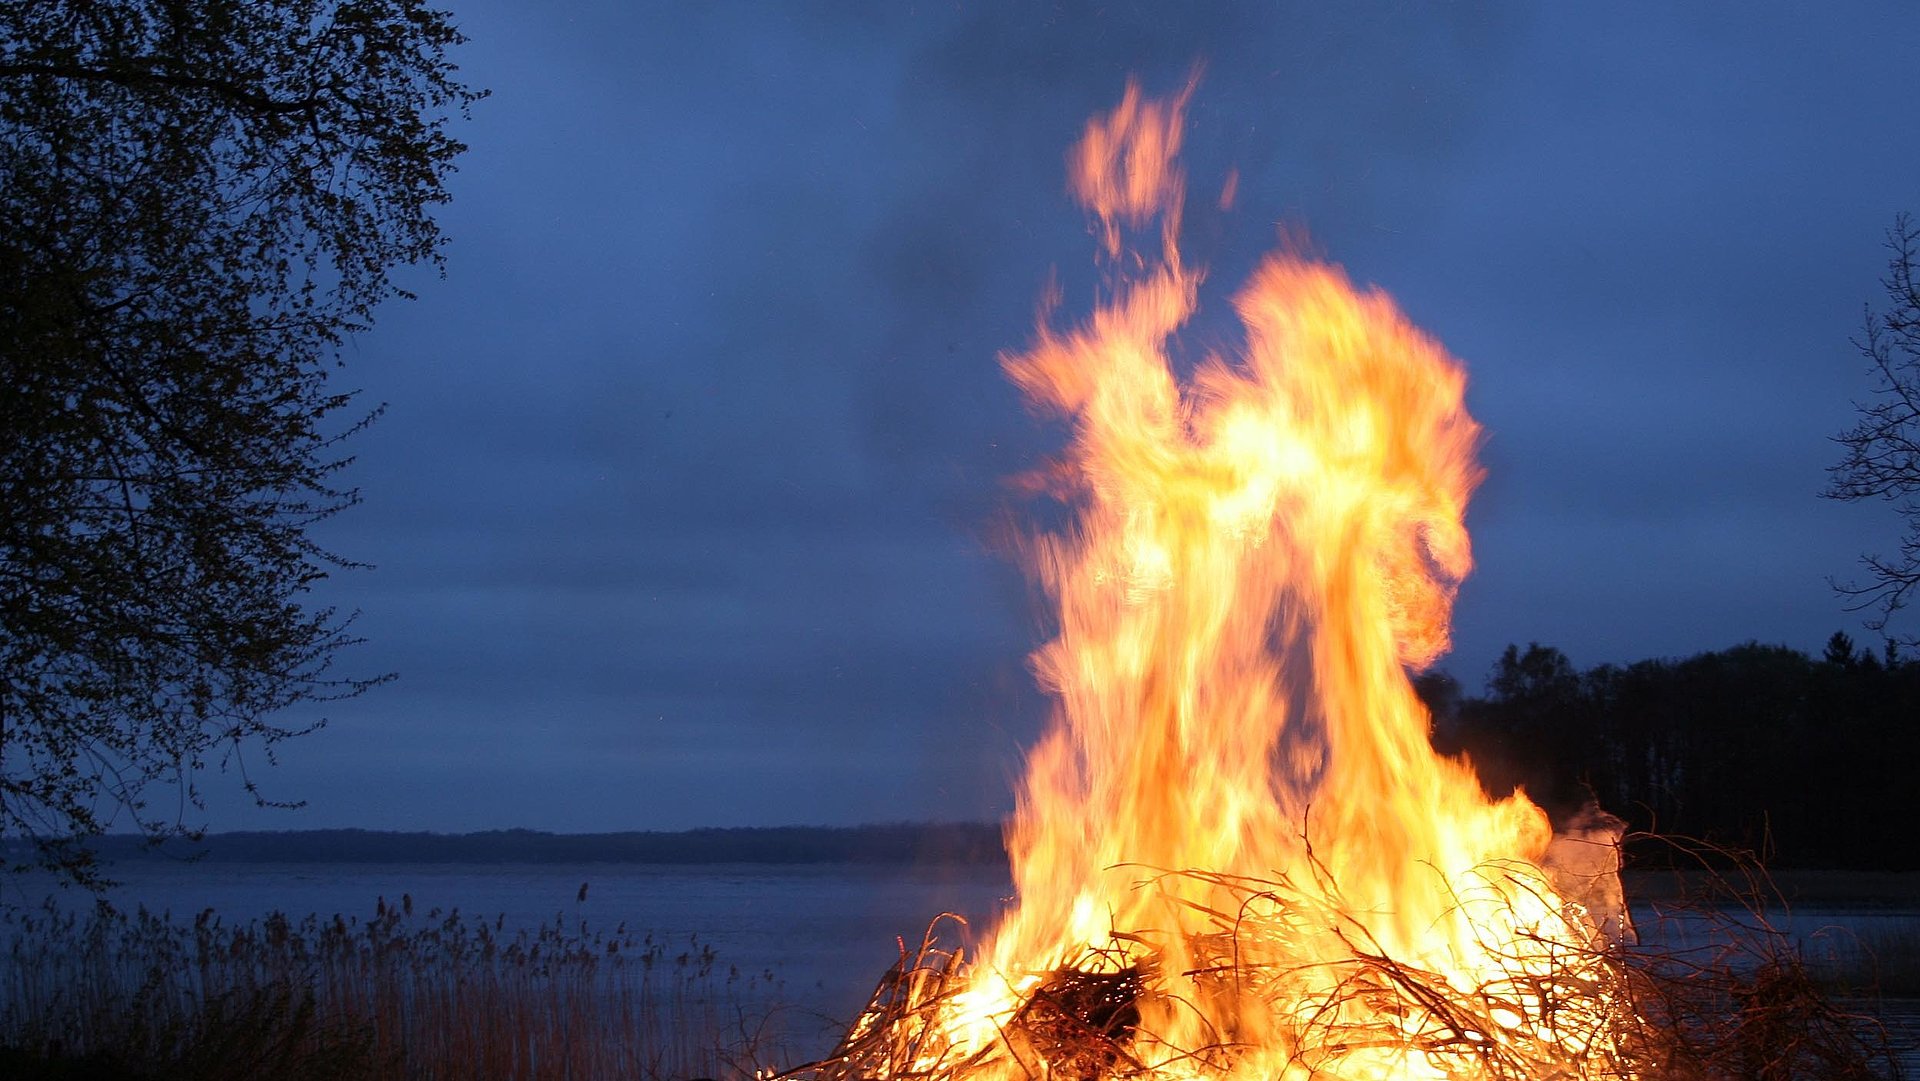 Camping in Unterfranken - Fokus auf großes Lagerfeuer in der Nacht am See